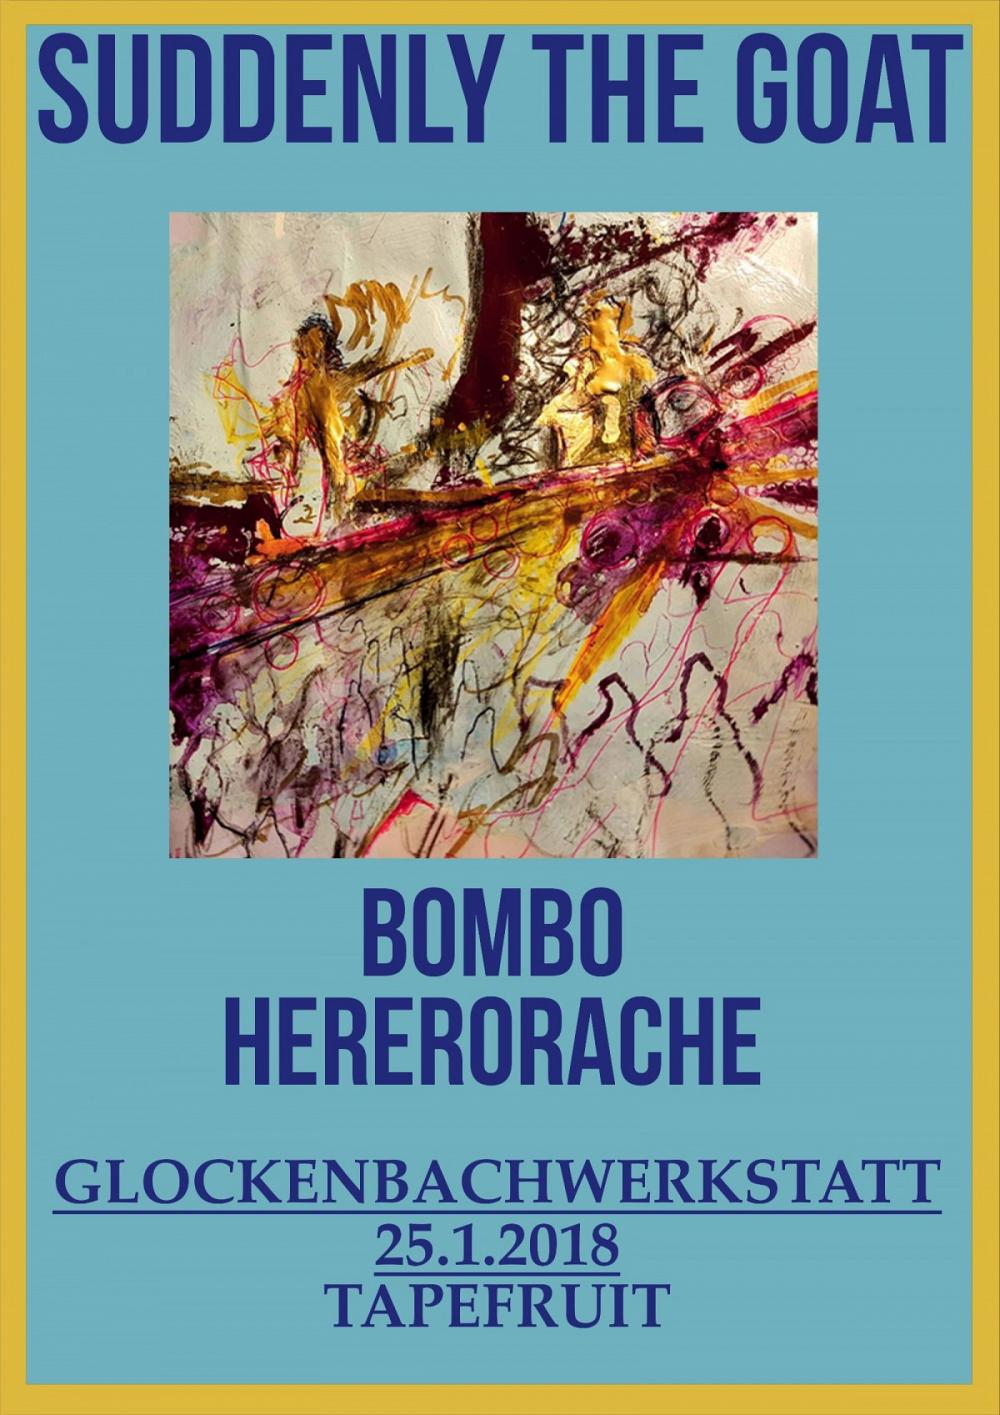 Tapefruit Konzert: Suddenly The Goat + Bombo + Hererorache | 25.01.2018 @ Glockenbachwerkstatt